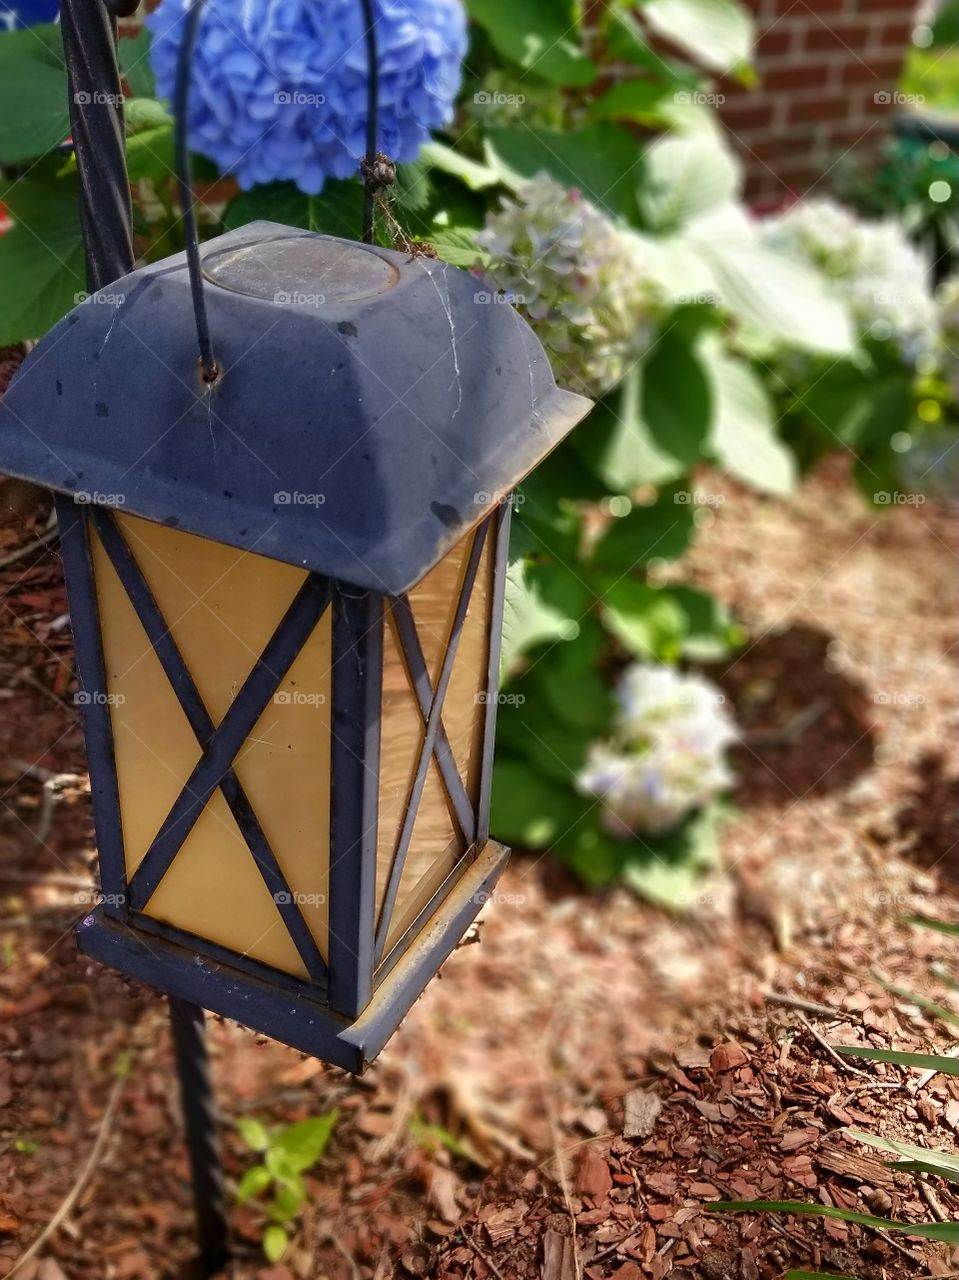 Daytime lantern